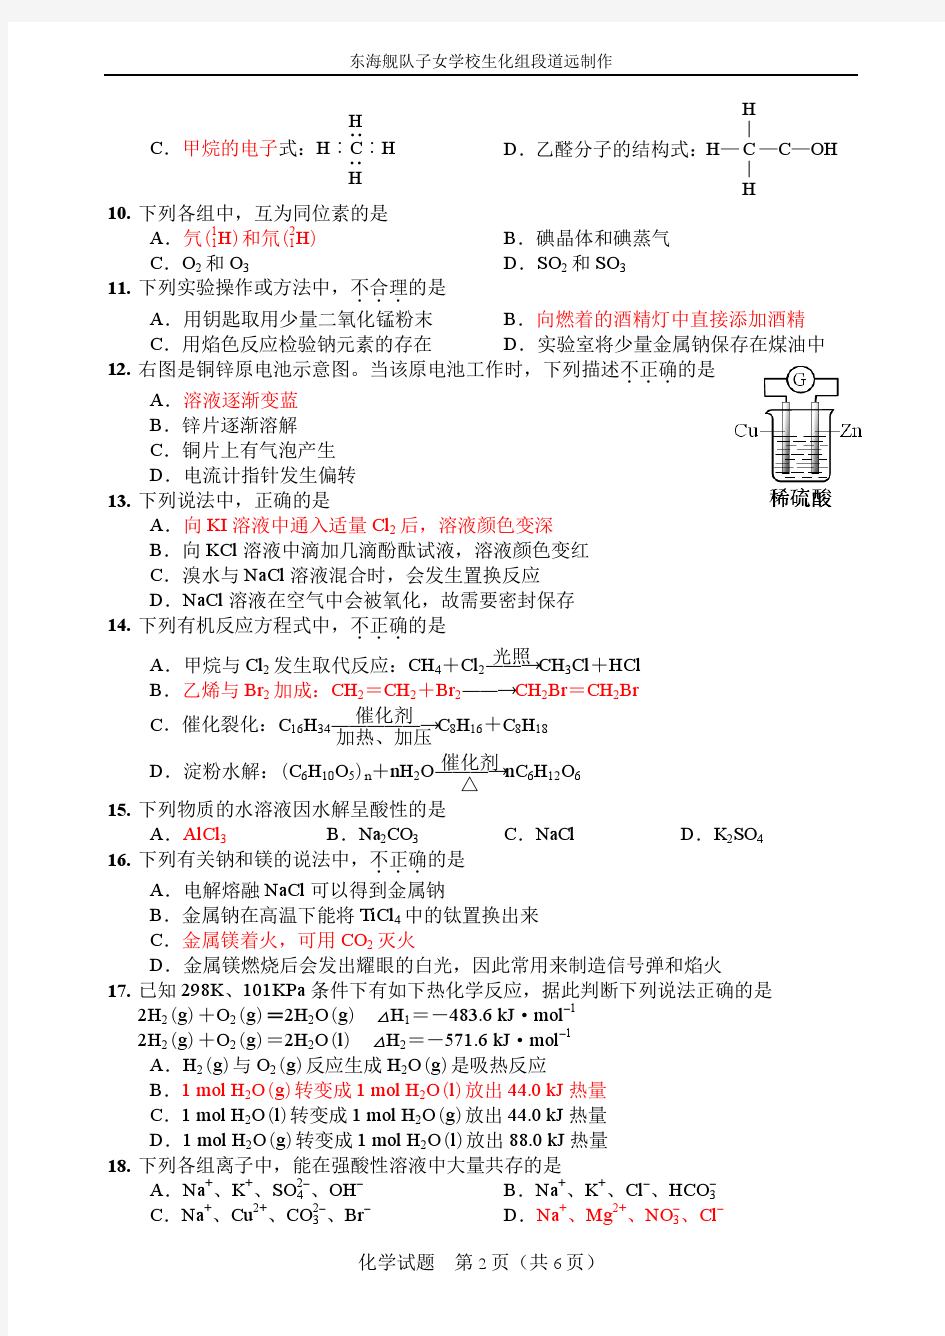 2015年1月浙江省普通高中学业水平考试化学试题及答案